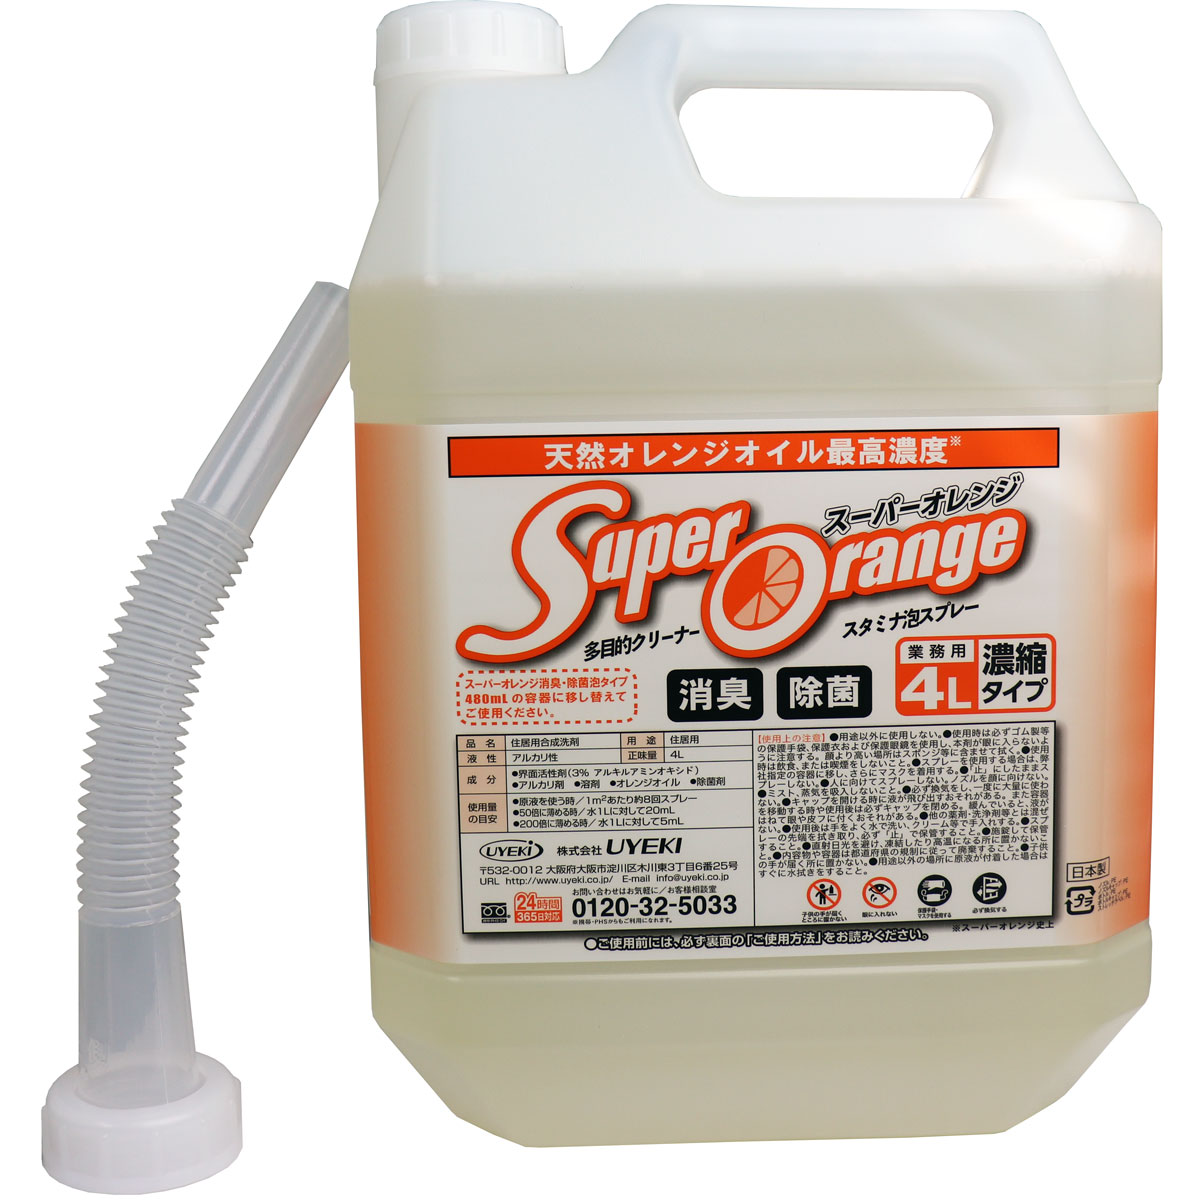 【アウトレット】多目的クリーナー スーパーオレンジ 消臭除菌 スタミナ泡スプレー 業務用 4L